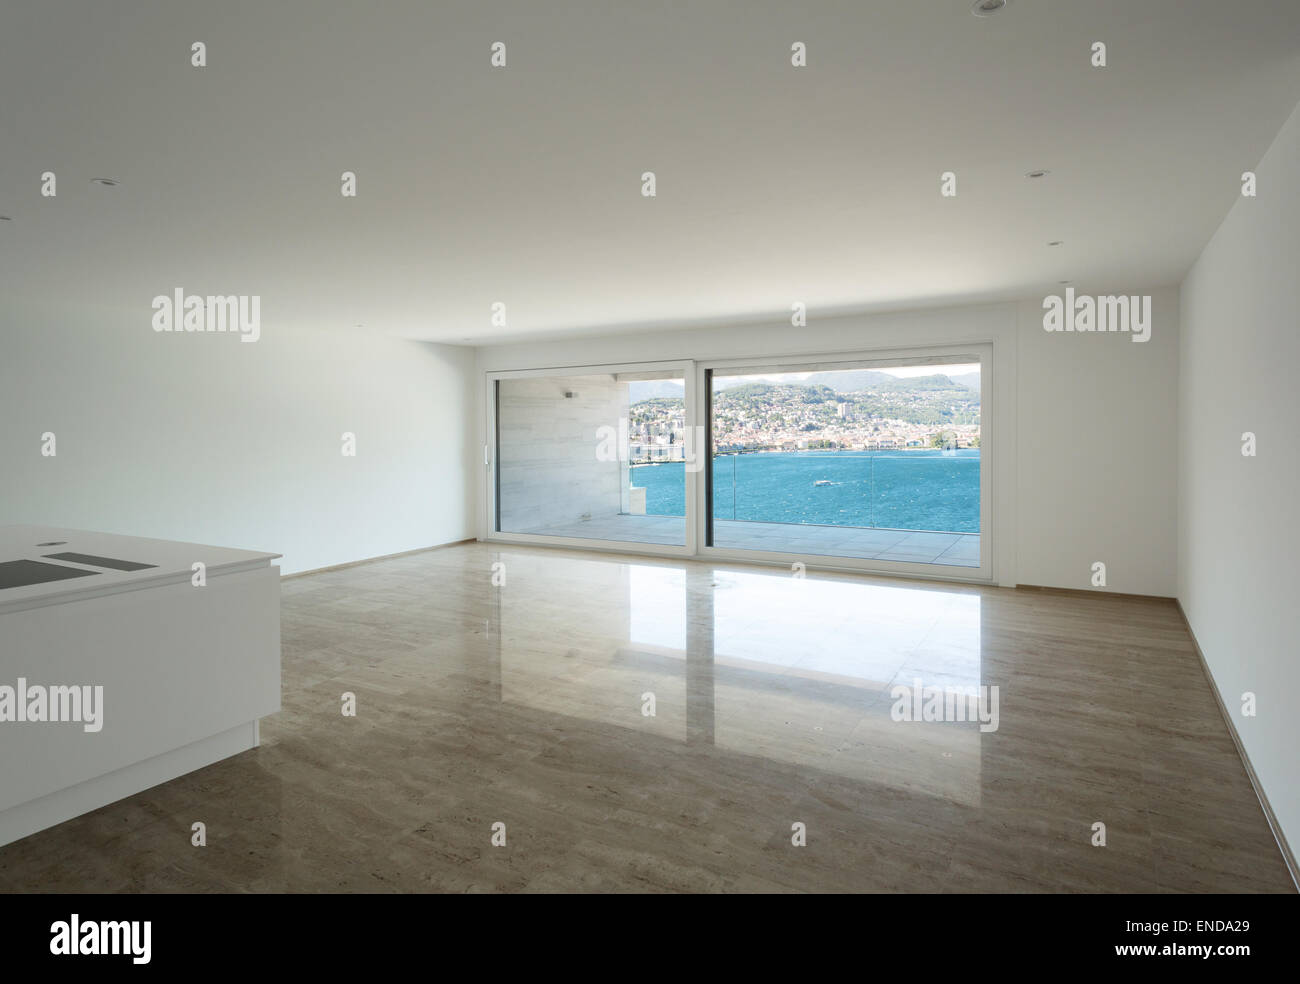 Interior, apartamento vacío, piso de mármol, amplio salón Foto de stock